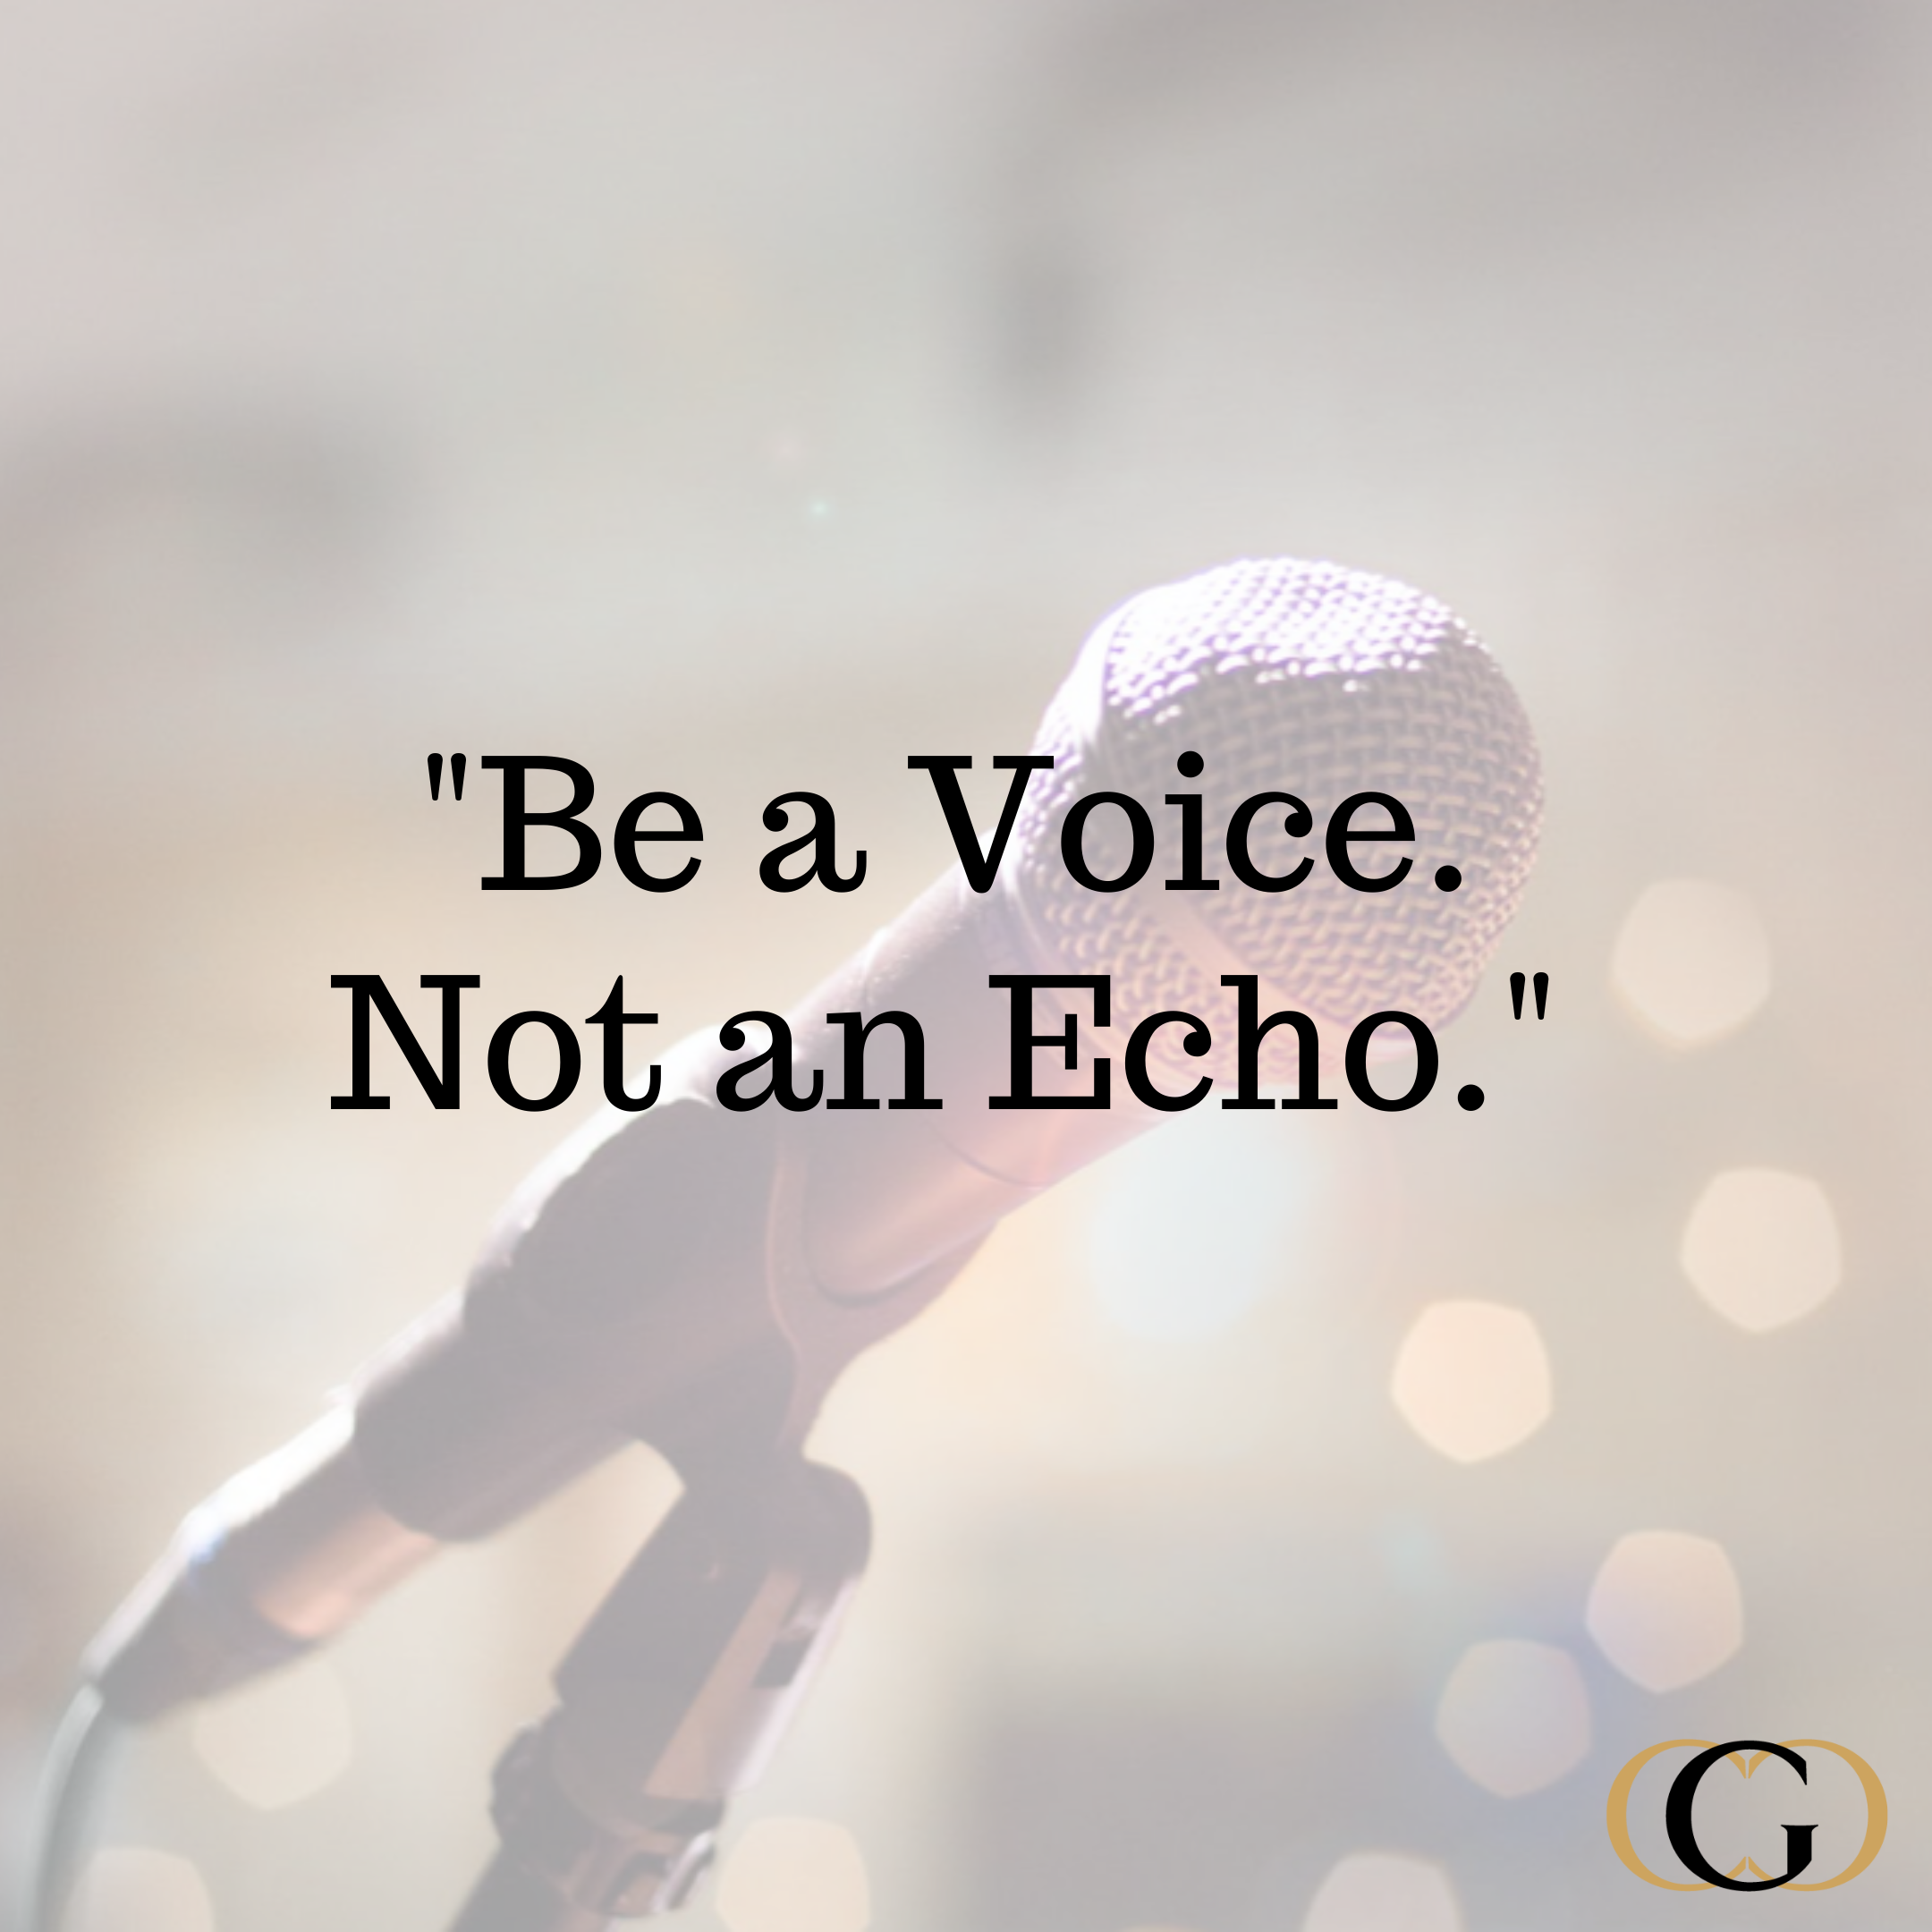 “Be a voice. Not an echo.”